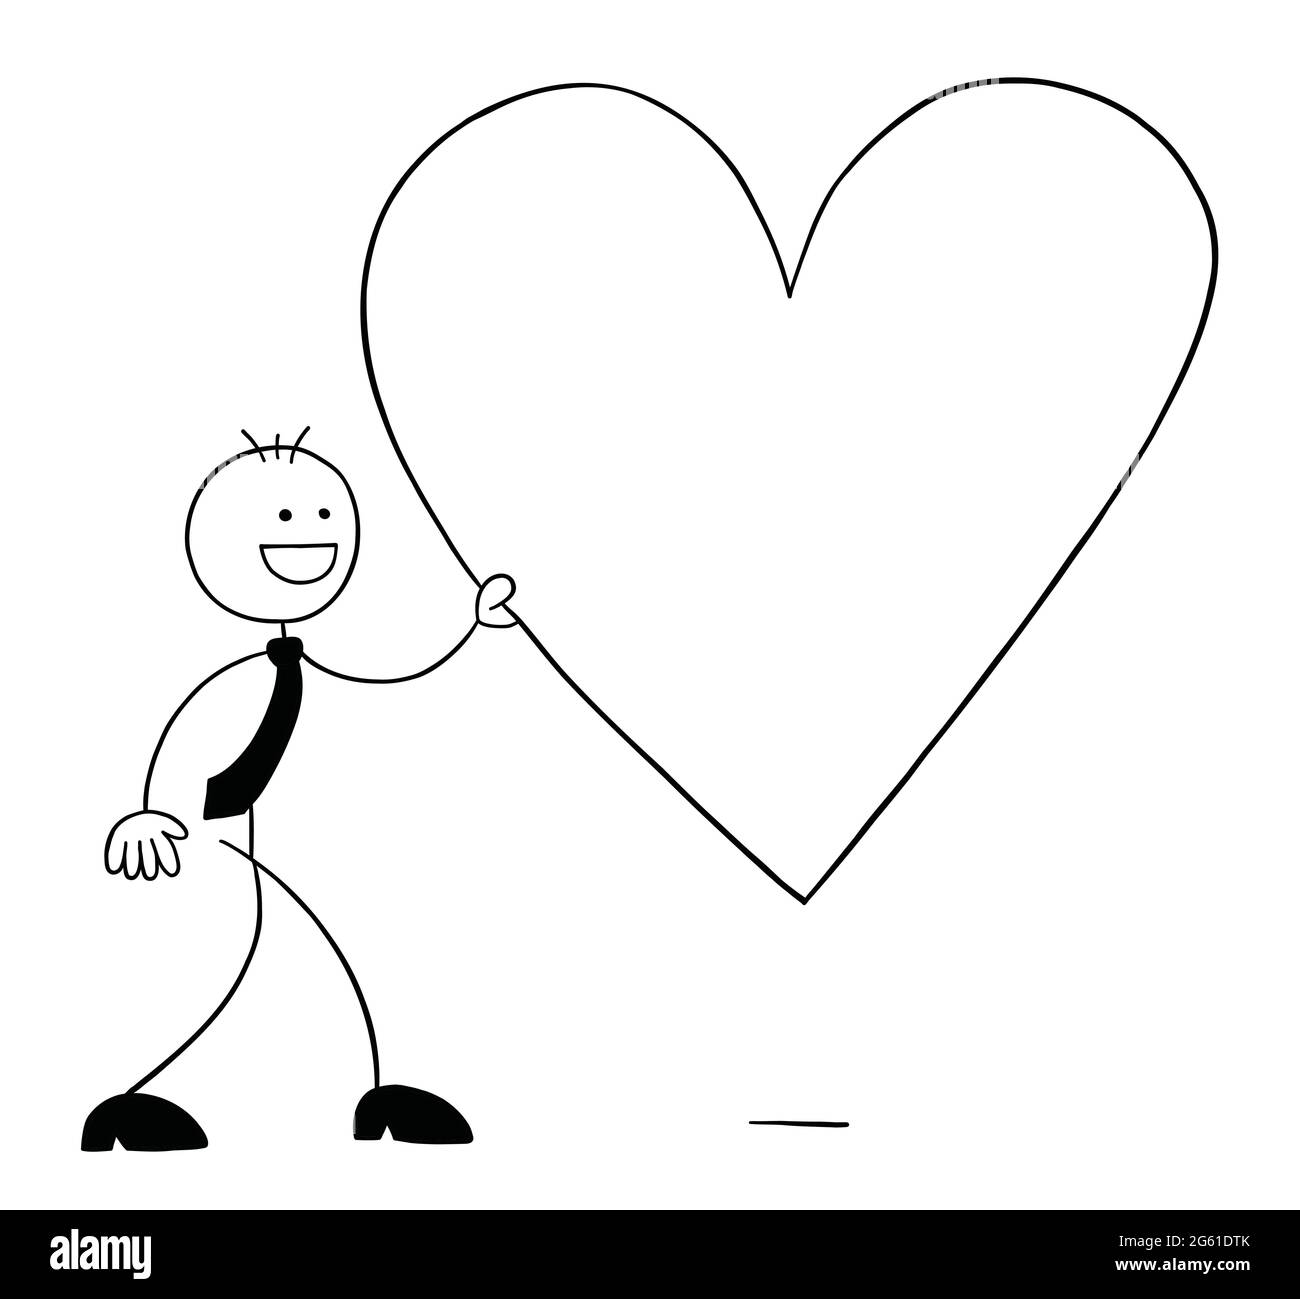 Stickman homme d'affaires personnage marchant et tenant le symbole grand coeur, illustration de dessin animé vecteur. Contour noir et couleur blanche. Illustration de Vecteur